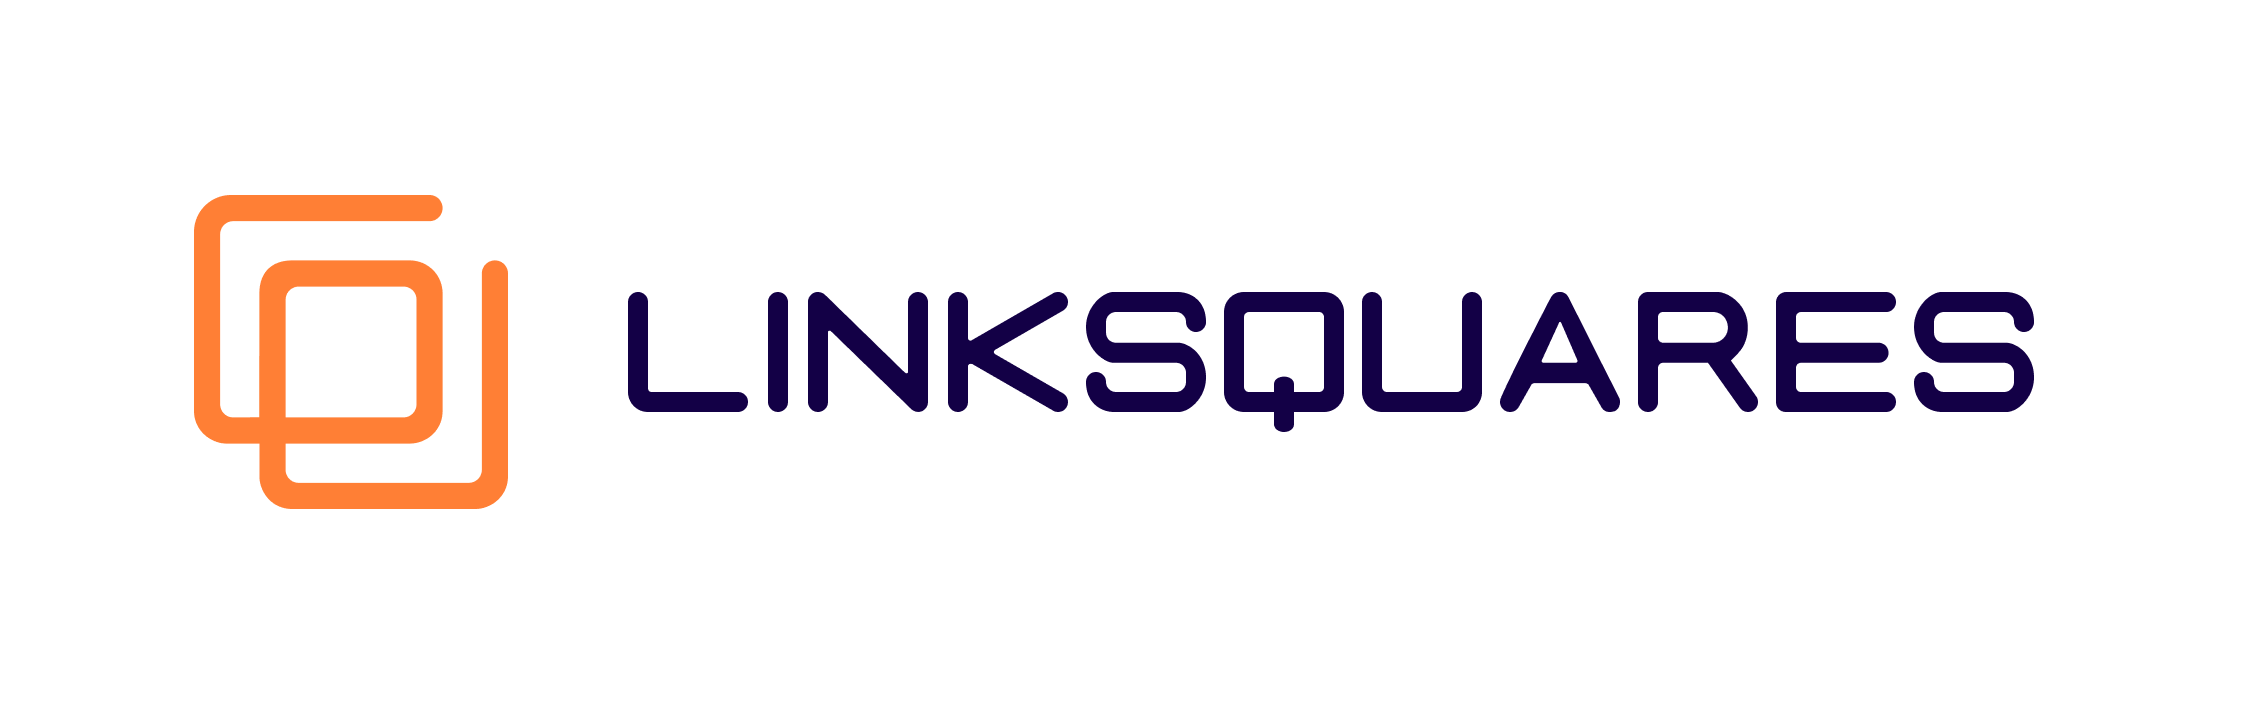 LinkSquares-Logo-Original